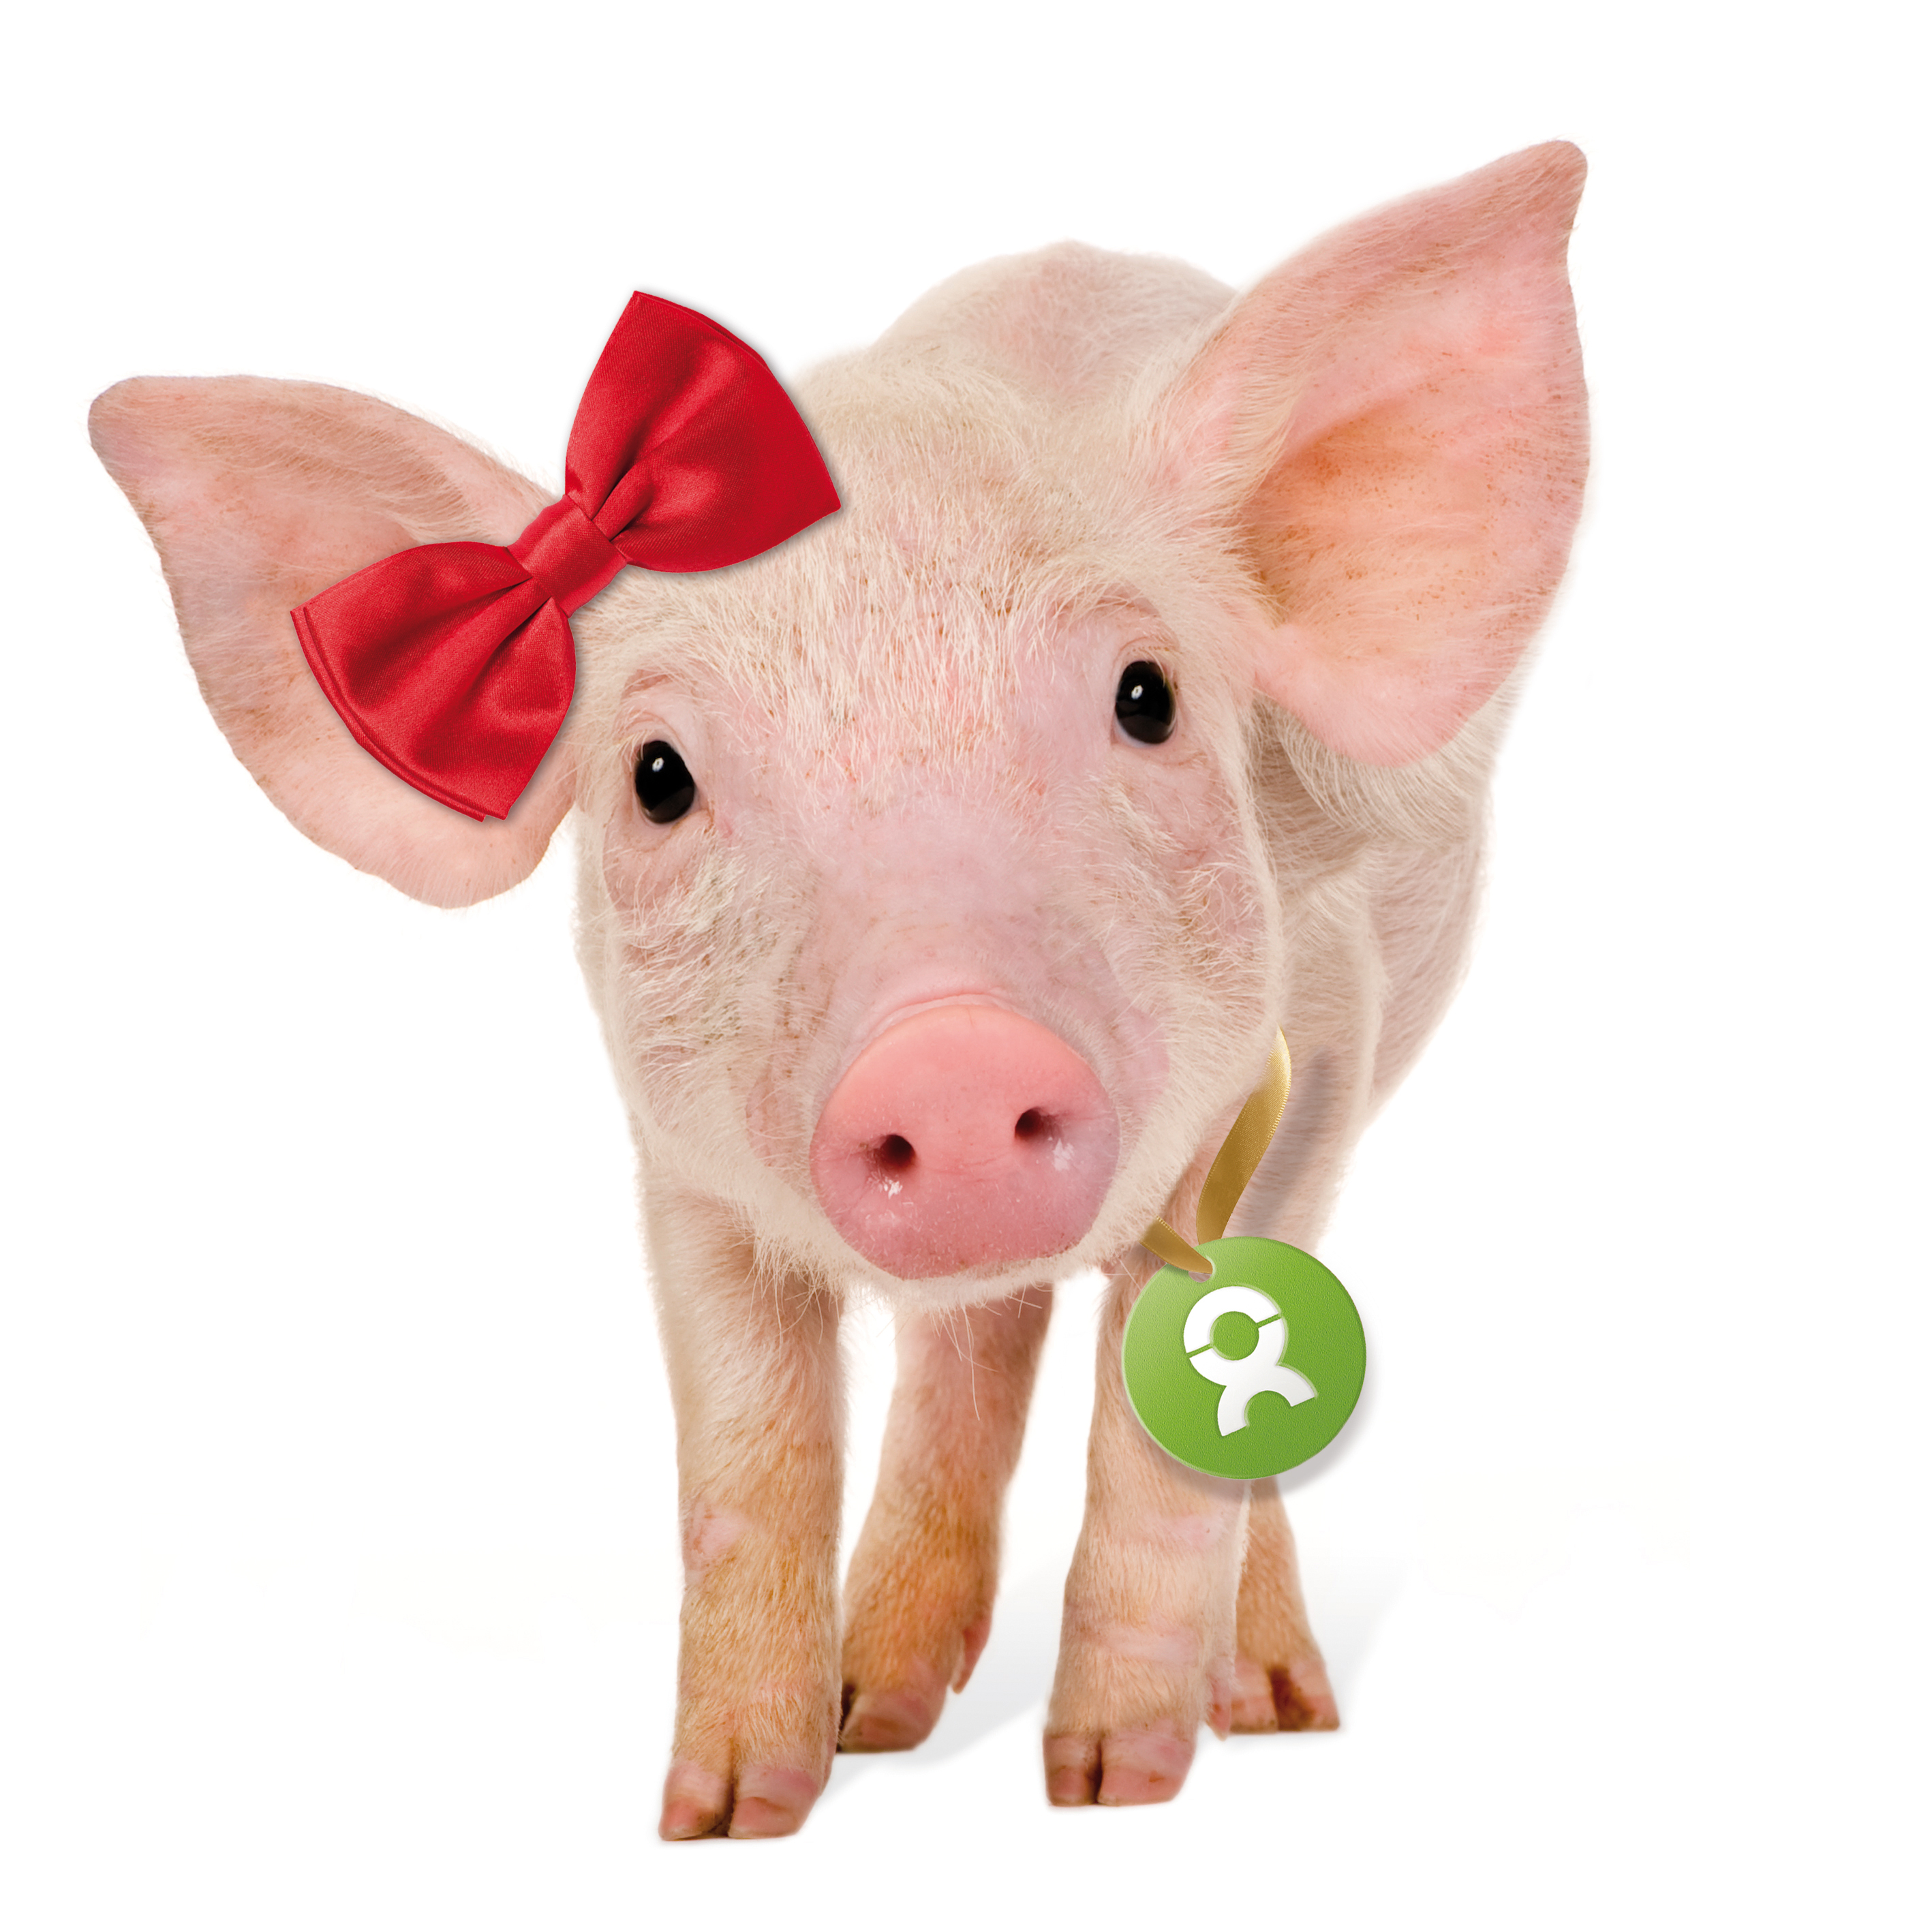 Beispiel Geschenk Spende mit einem rosa Ferkel, dass eine rote Schleife am Ohr trägt